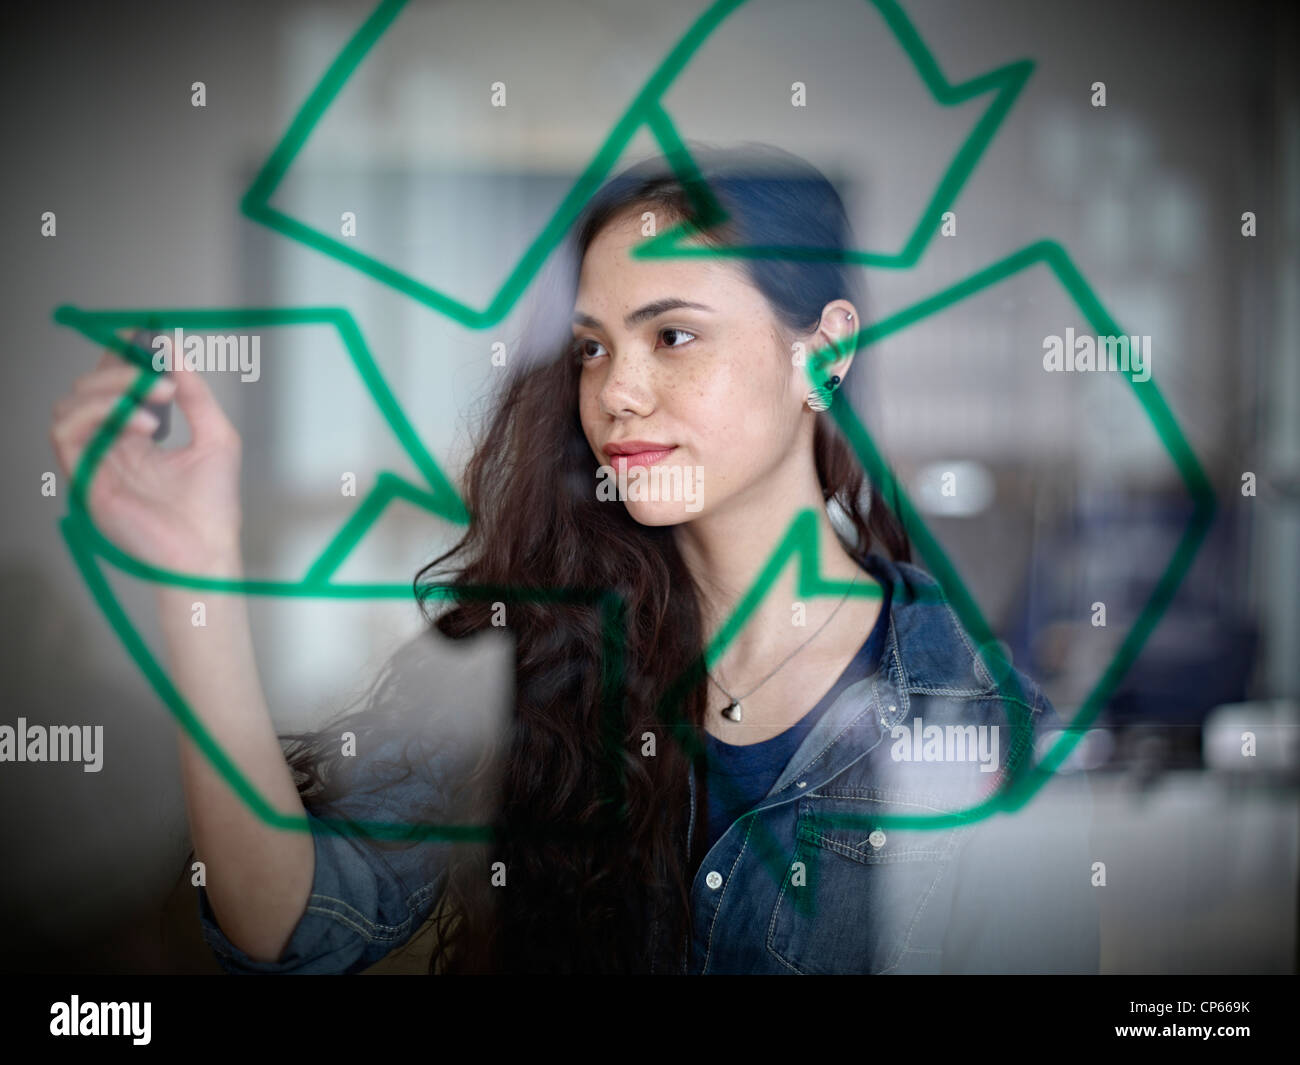 Germany, Cologne, young woman encombrement symbole de recyclage sur verre Banque D'Images